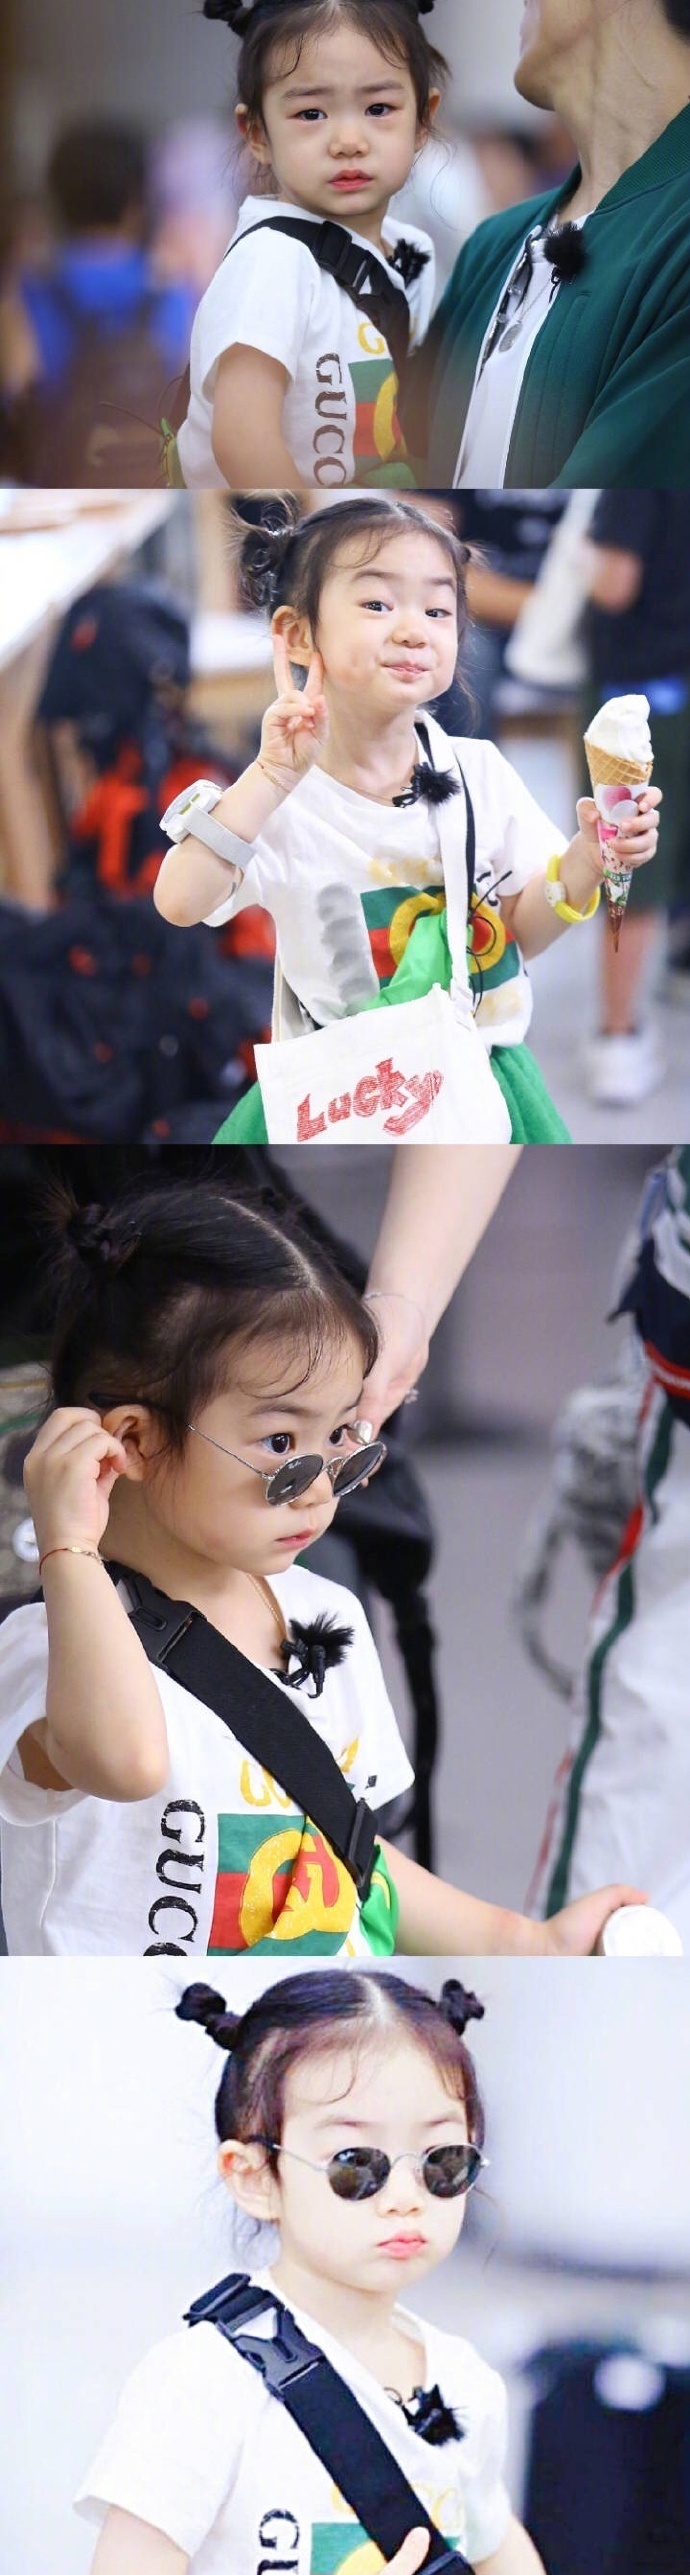 戚薇&李承铉的女儿 lucky李乐祺,神情什么的简直是mini版的戚哥嘛!